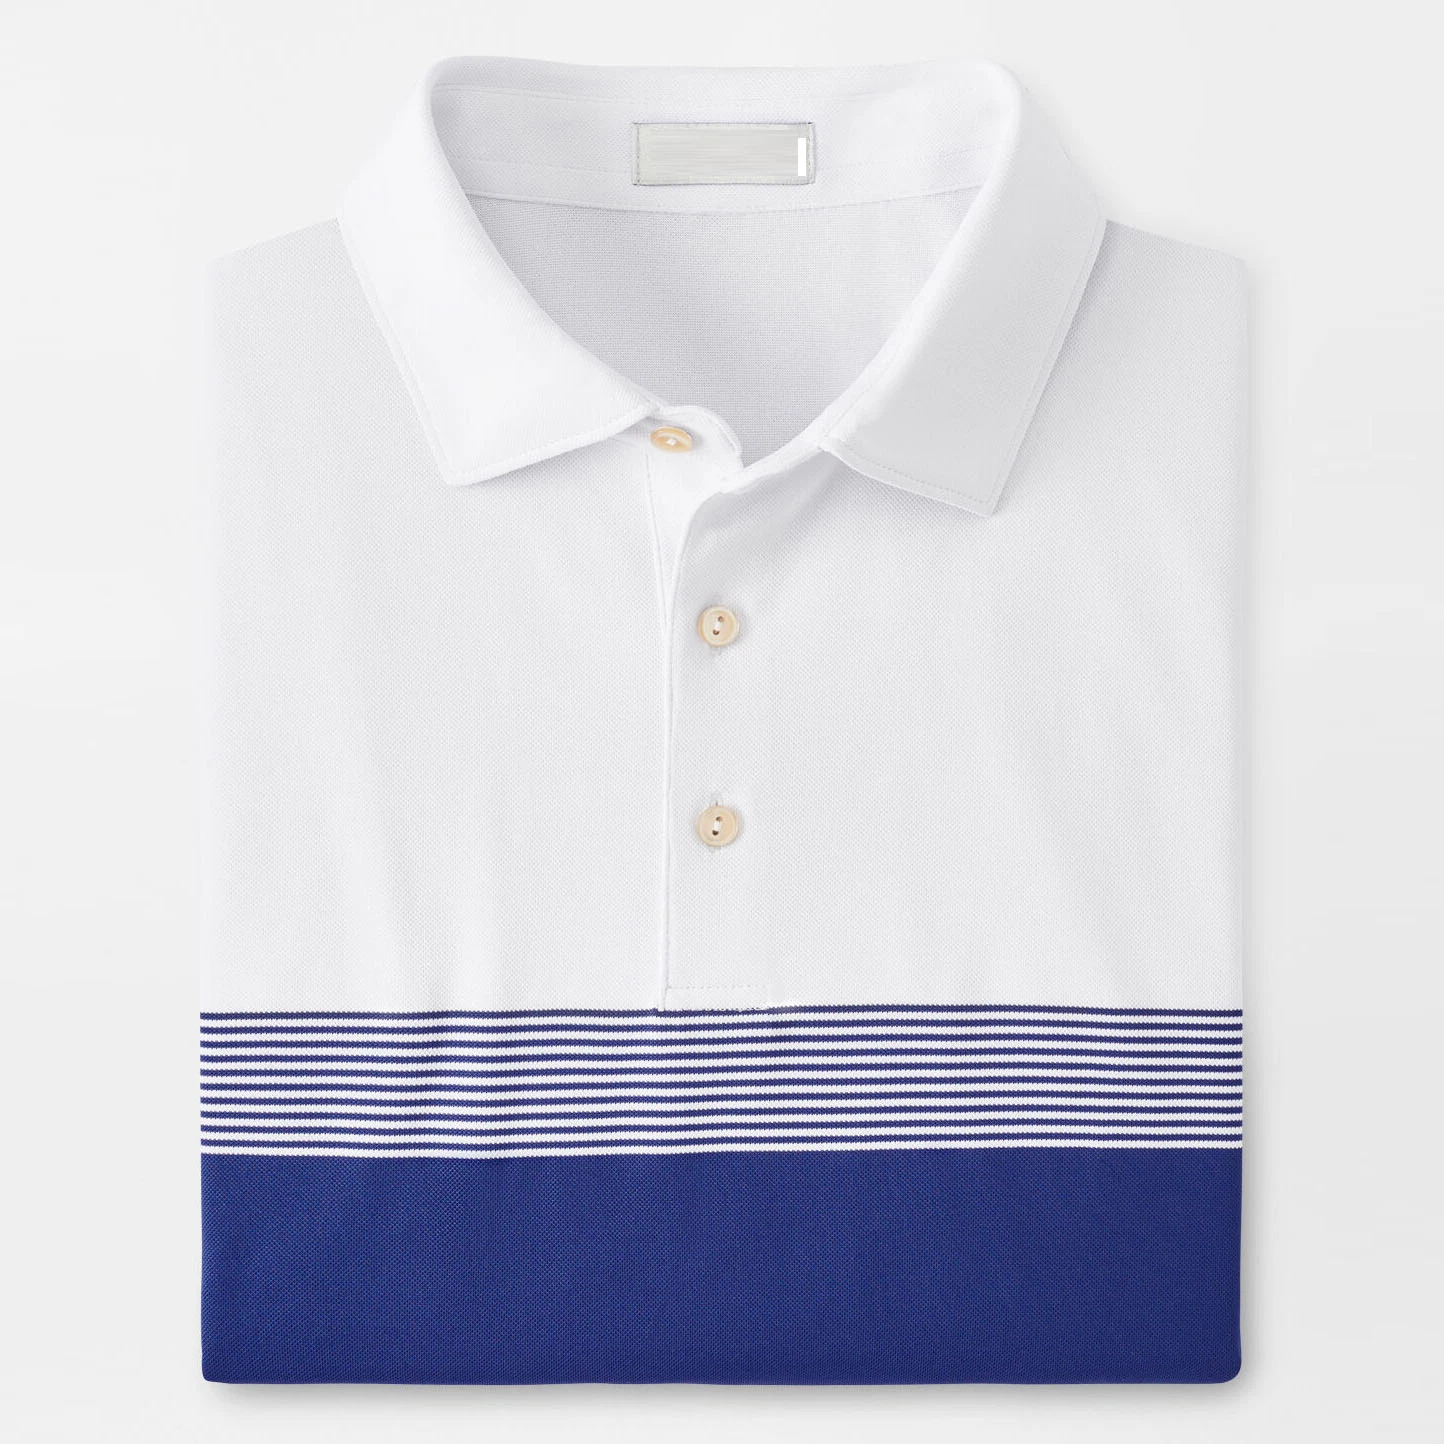 Logotipo bordado personalizado la coincidencia de color de alta calidad de la moda de rayas de manga corta de solapa informal para hombres camisas Polo